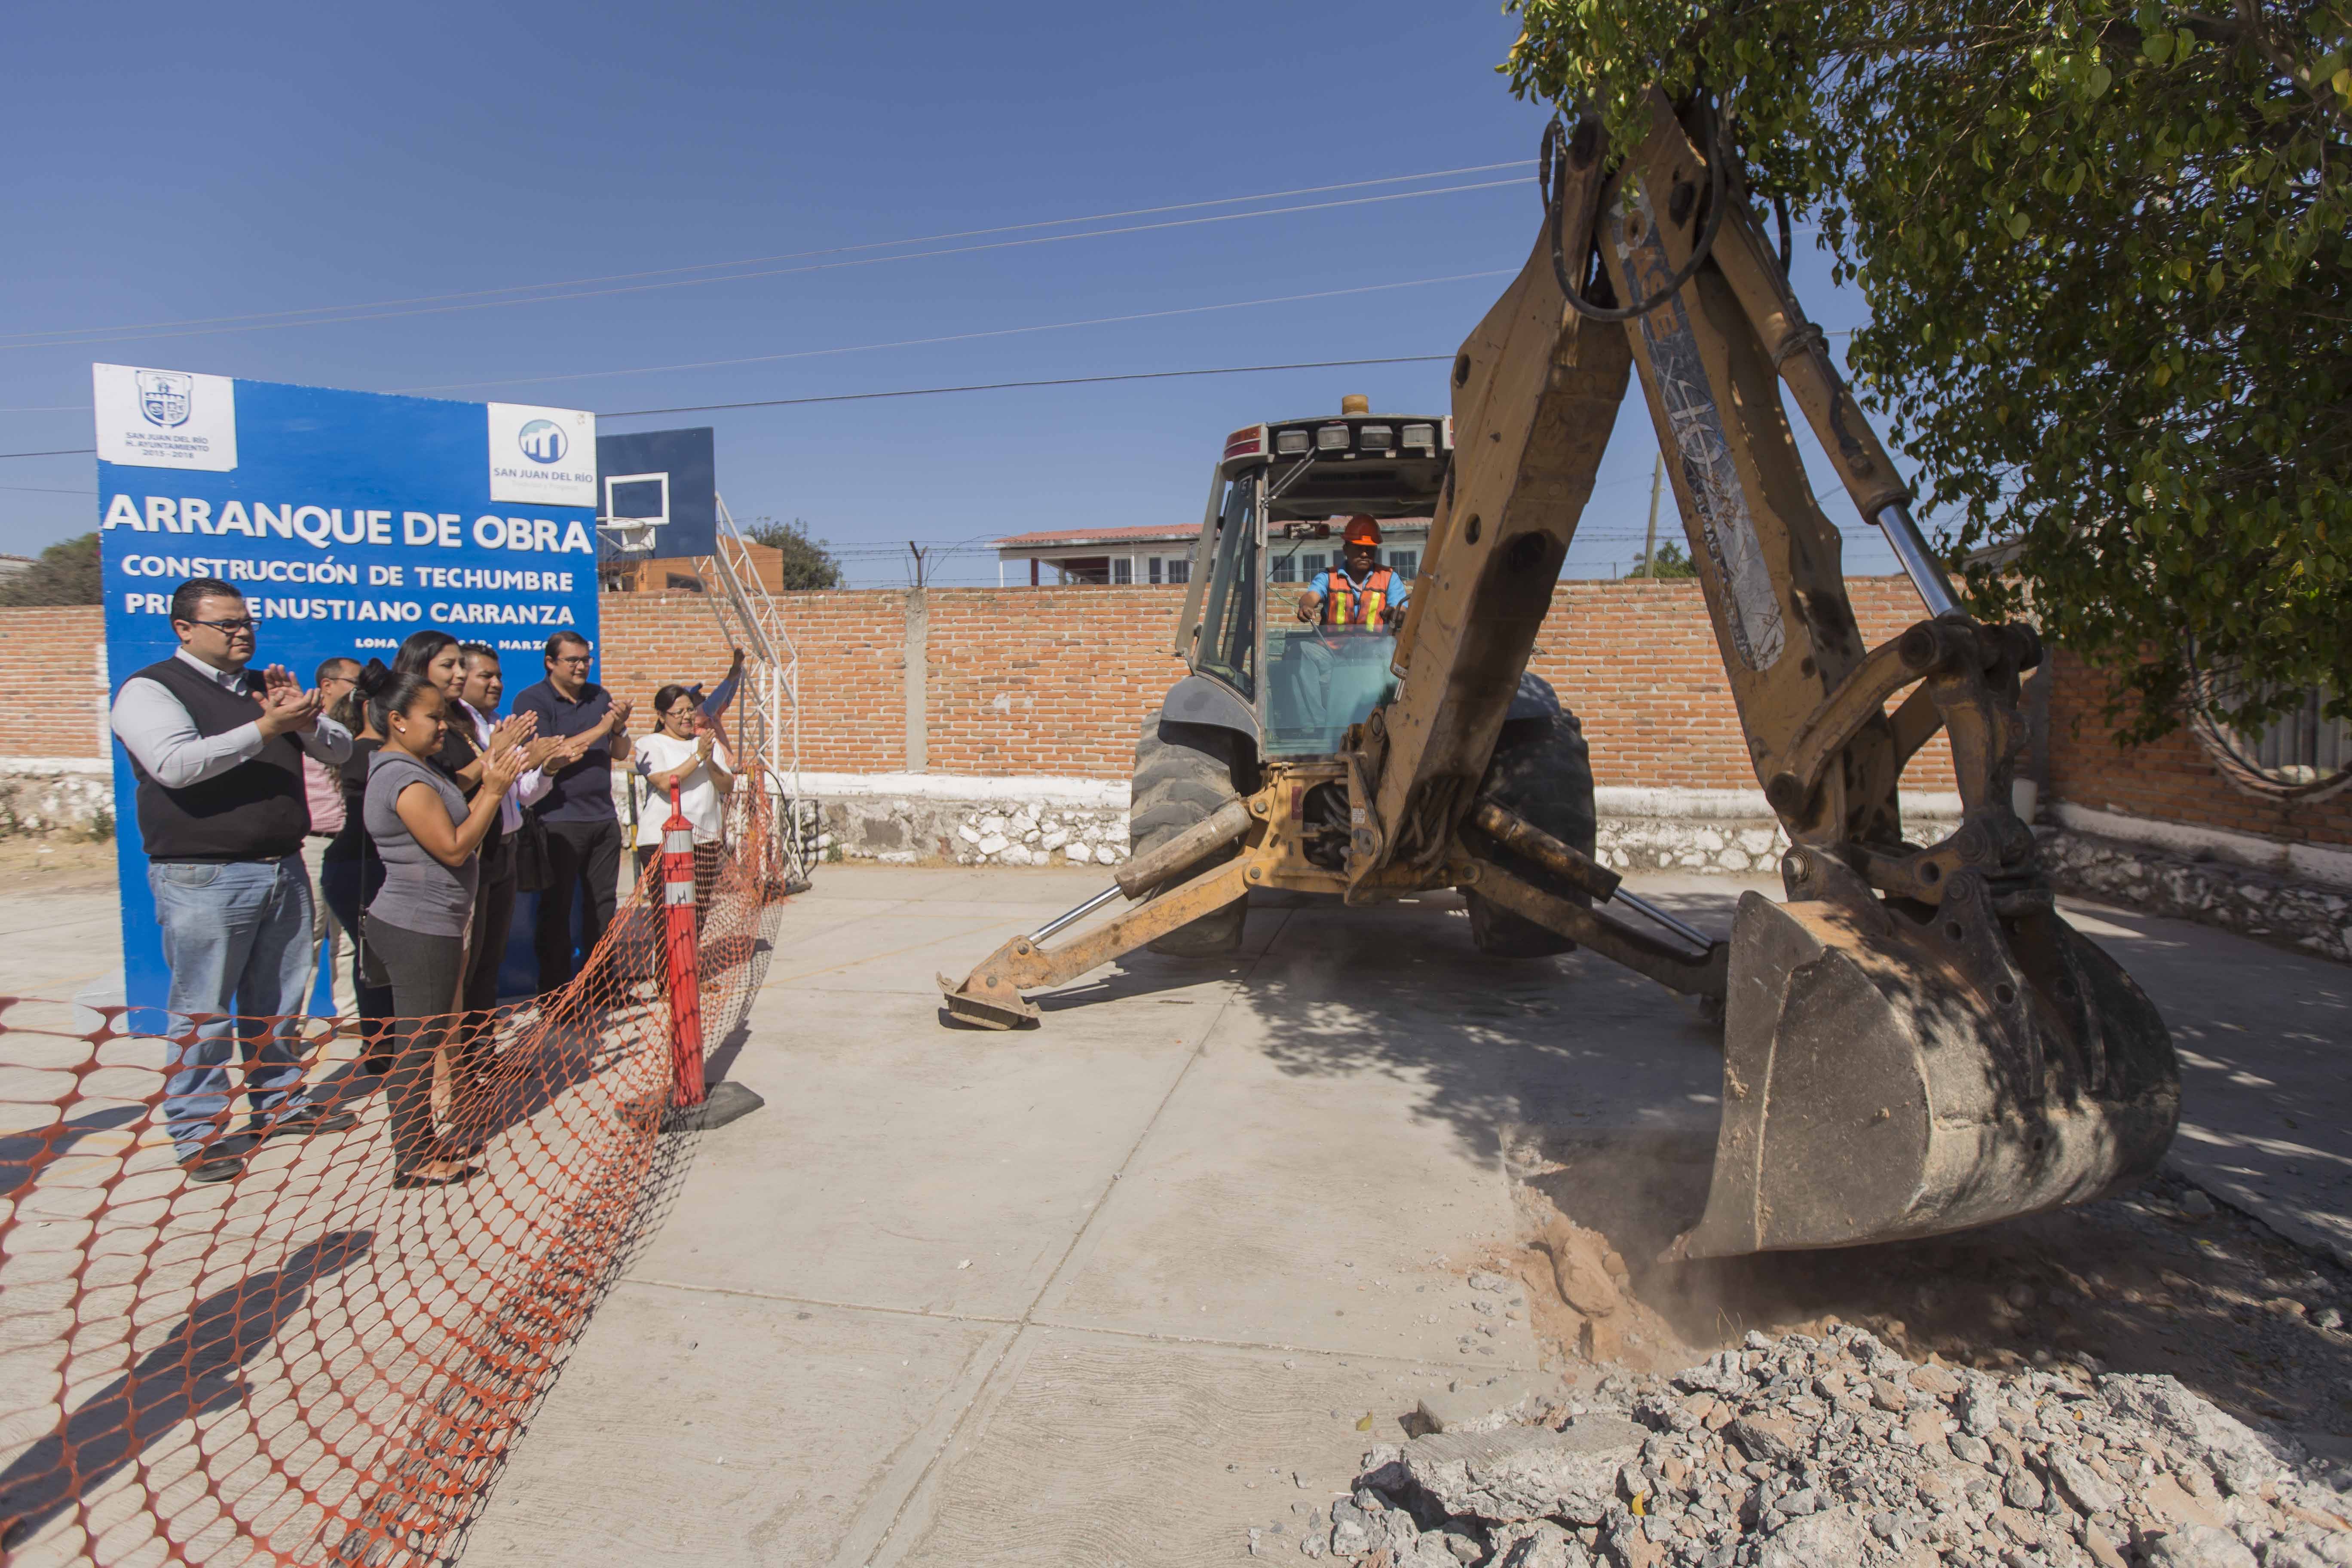  Invierte San Juan del RA�o 3.1 mdp en infraestructura vial y educativa para Loma Linda